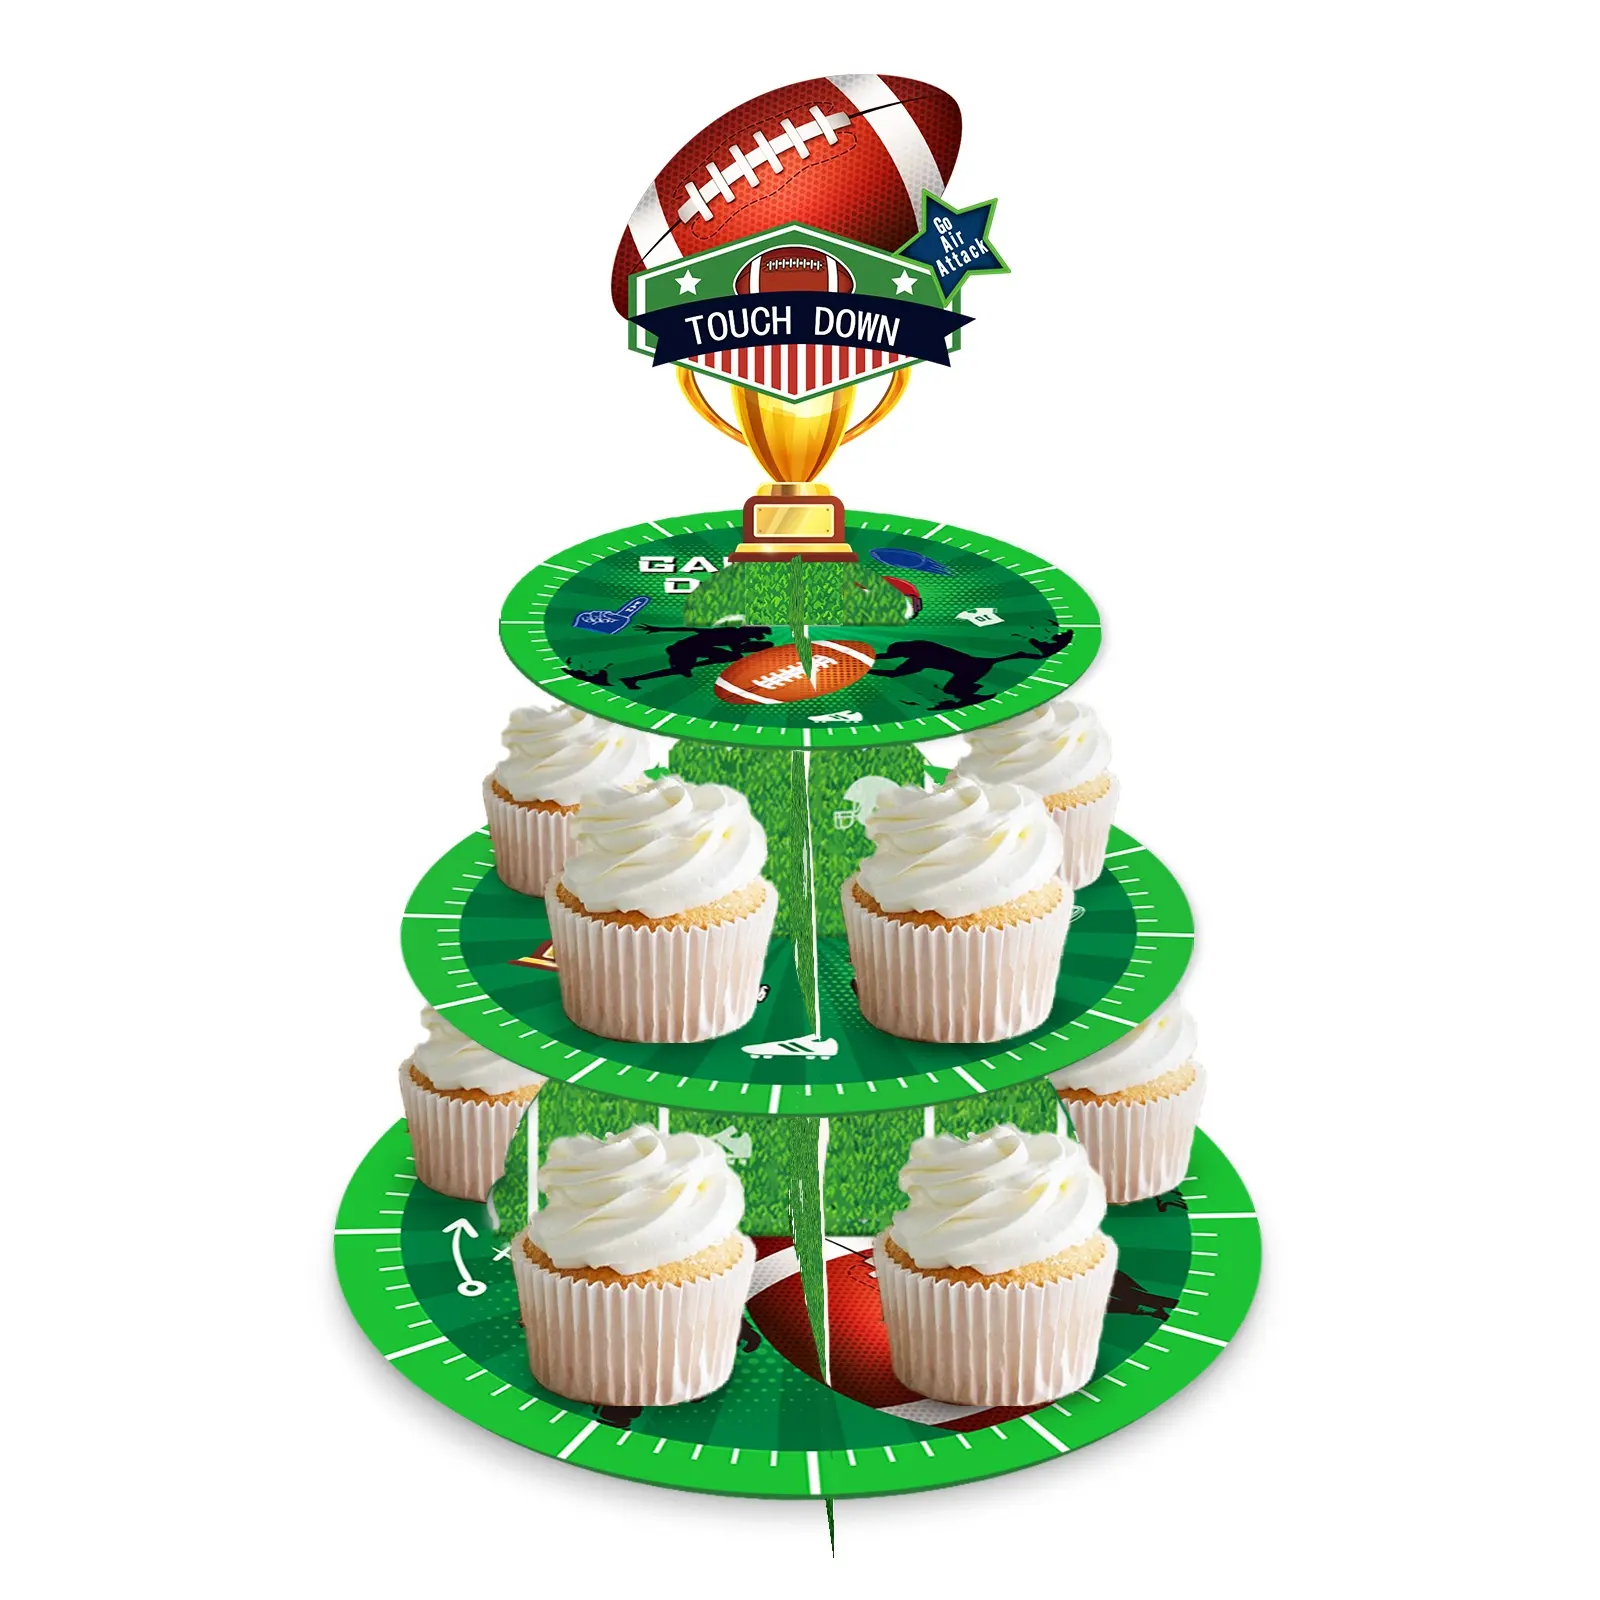 Huancai Rugby Theme Kuchenst änder 3 Tier Cupcake Holder Tower Geburtstags feier Dekorationen für Kinder Jungen Fußball Party zubehör